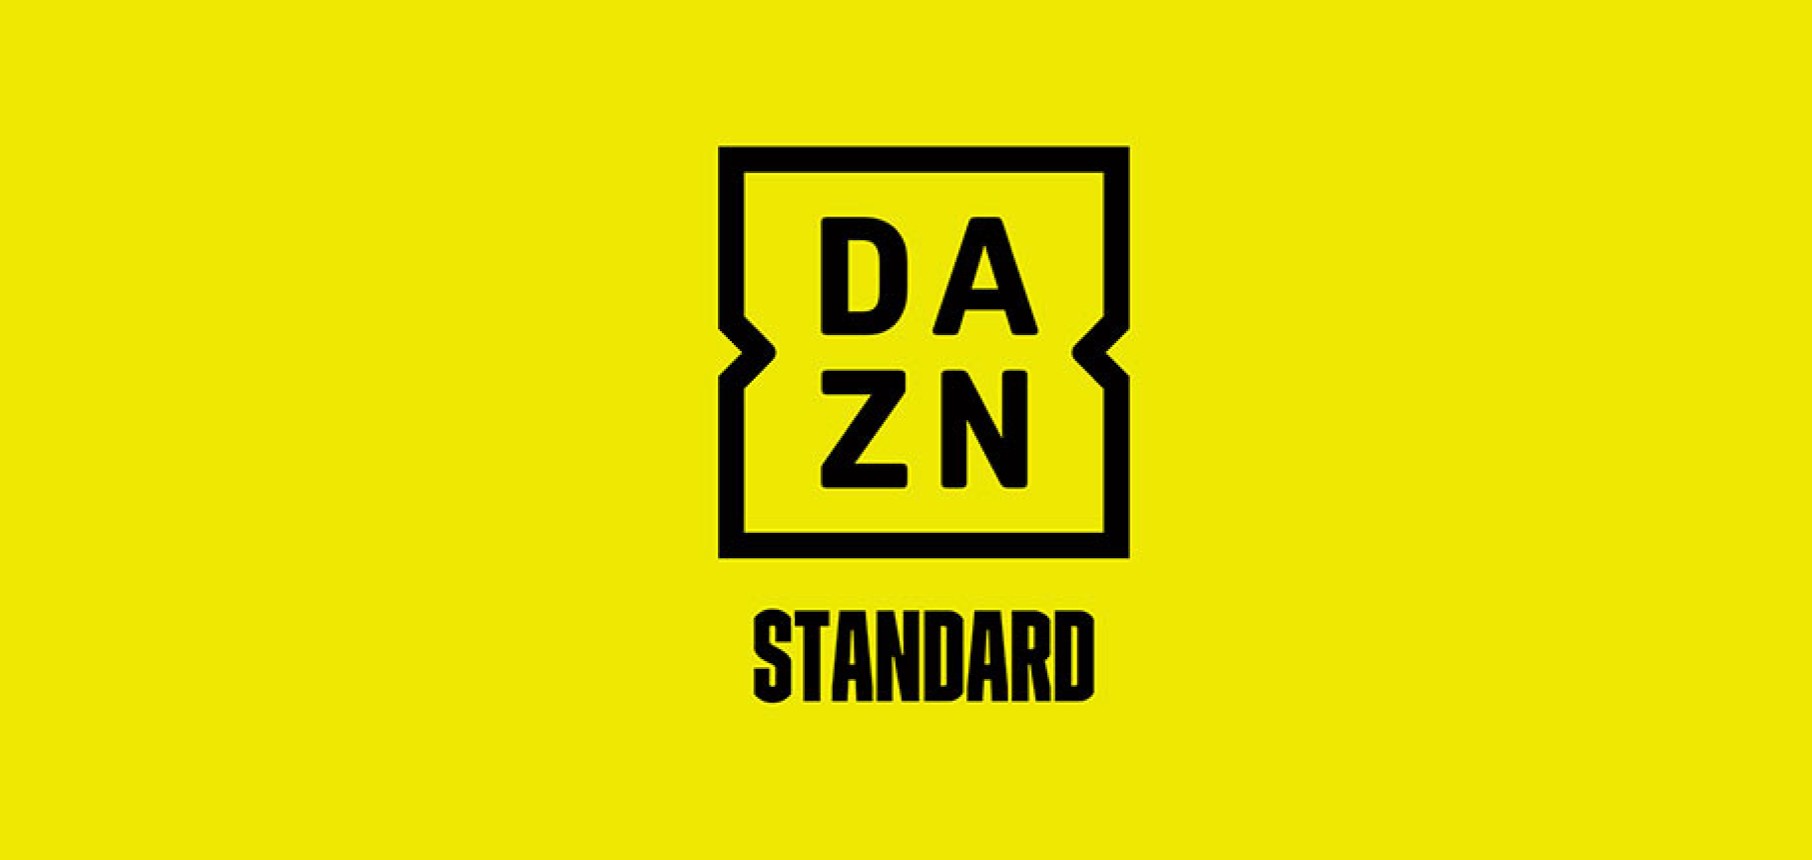 L'iniziativa di DAZN: l'abbonamento Standard con 50 euro di sconto